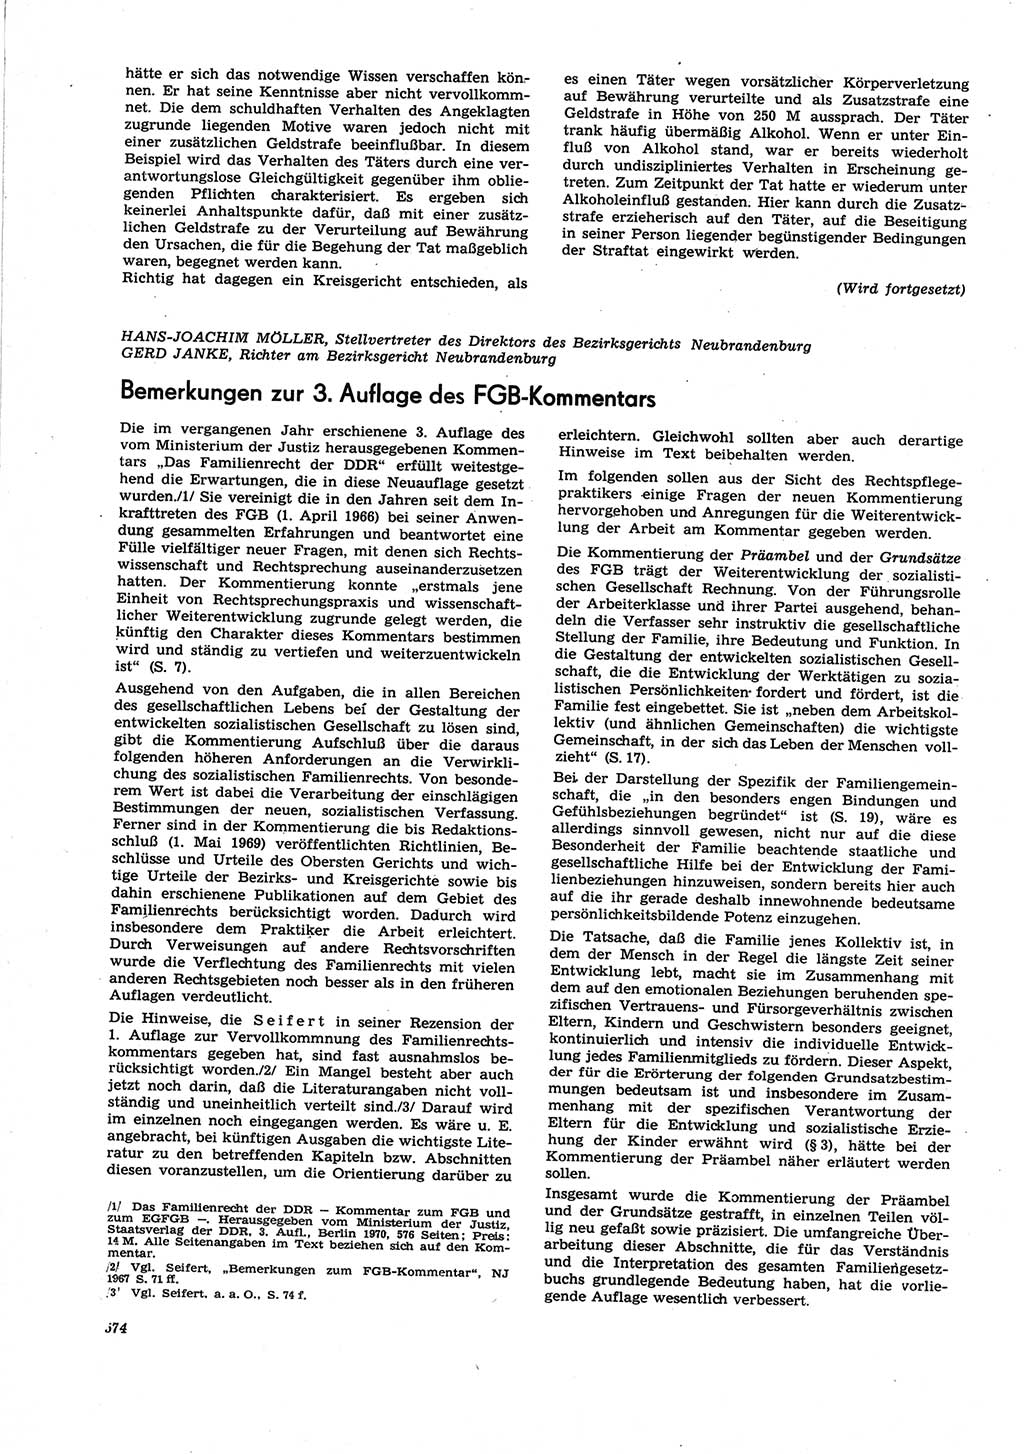 Neue Justiz (NJ), Zeitschrift für Recht und Rechtswissenschaft [Deutsche Demokratische Republik (DDR)], 25. Jahrgang 1971, Seite 574 (NJ DDR 1971, S. 574)